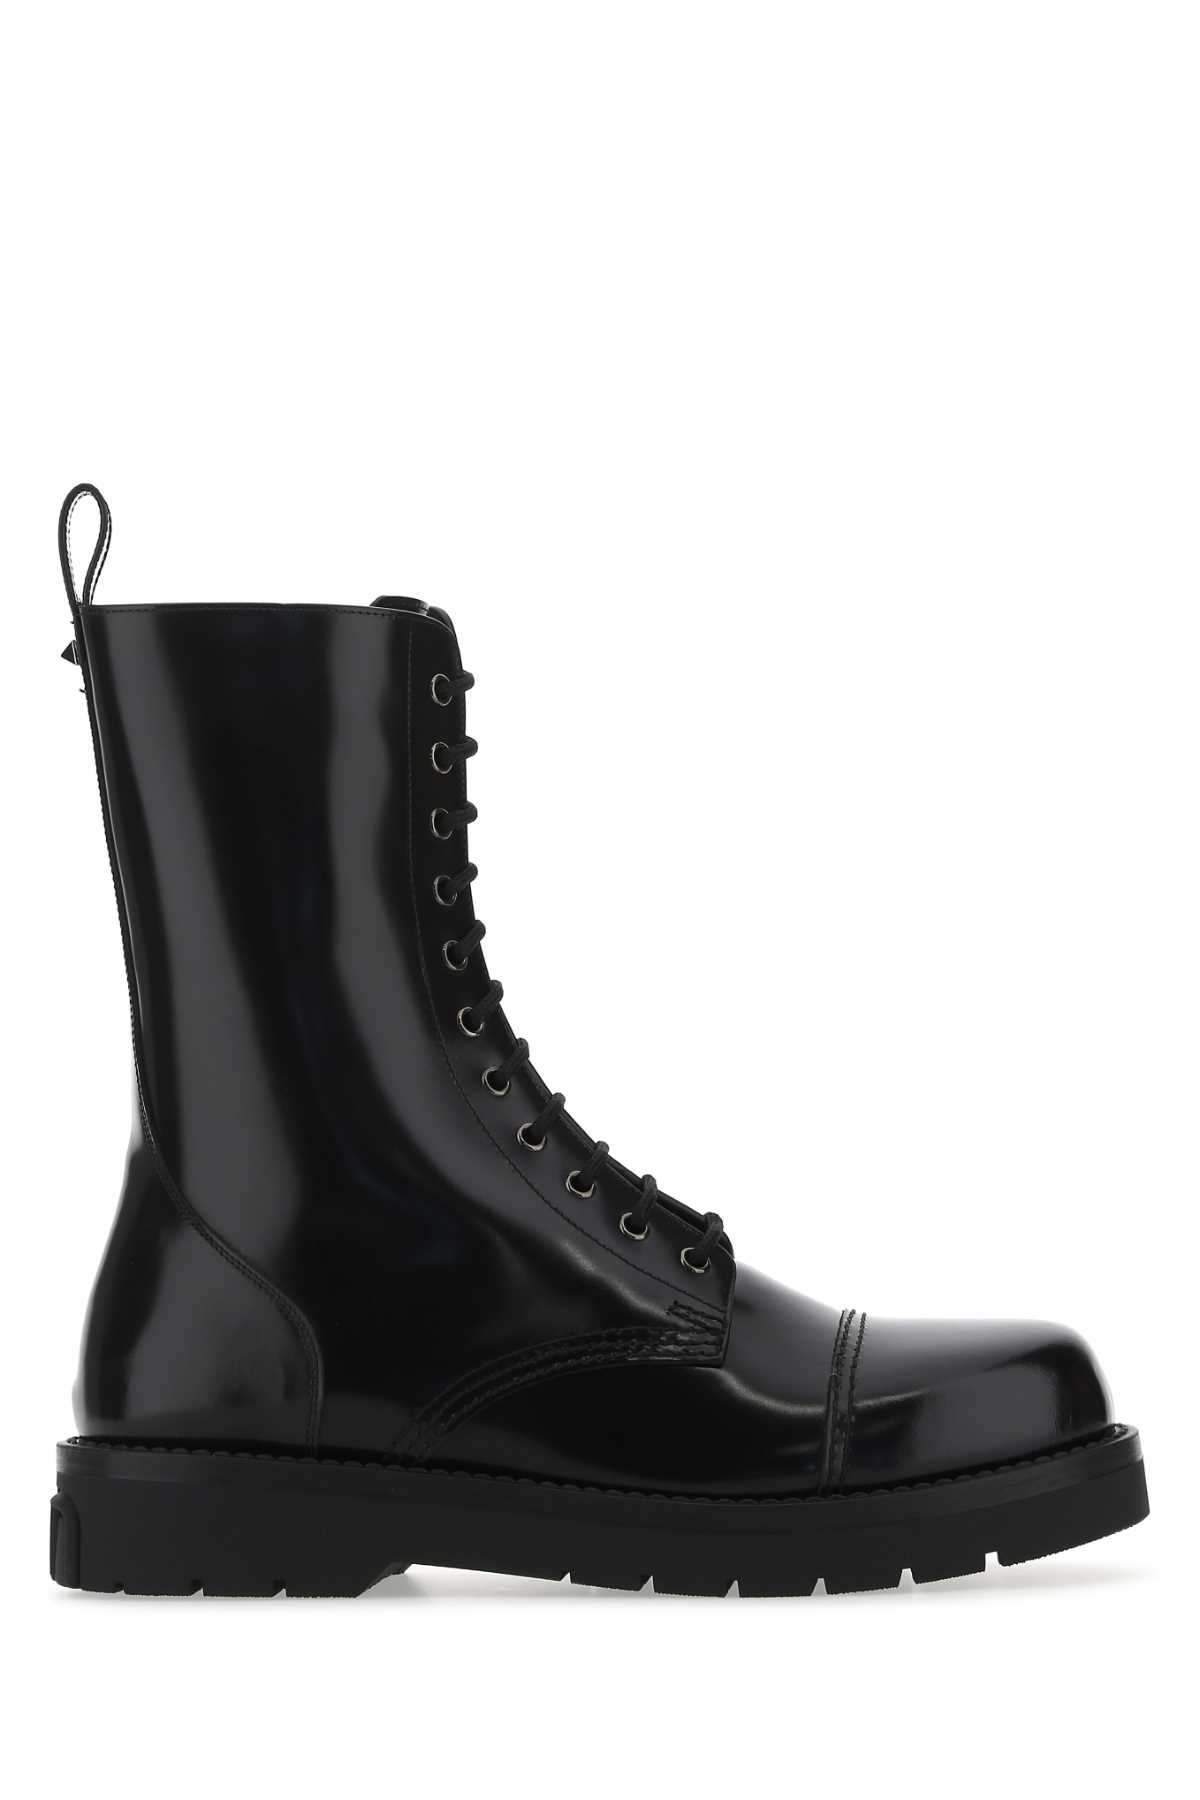 Valentino Garavani Black Leather Boots In 0no